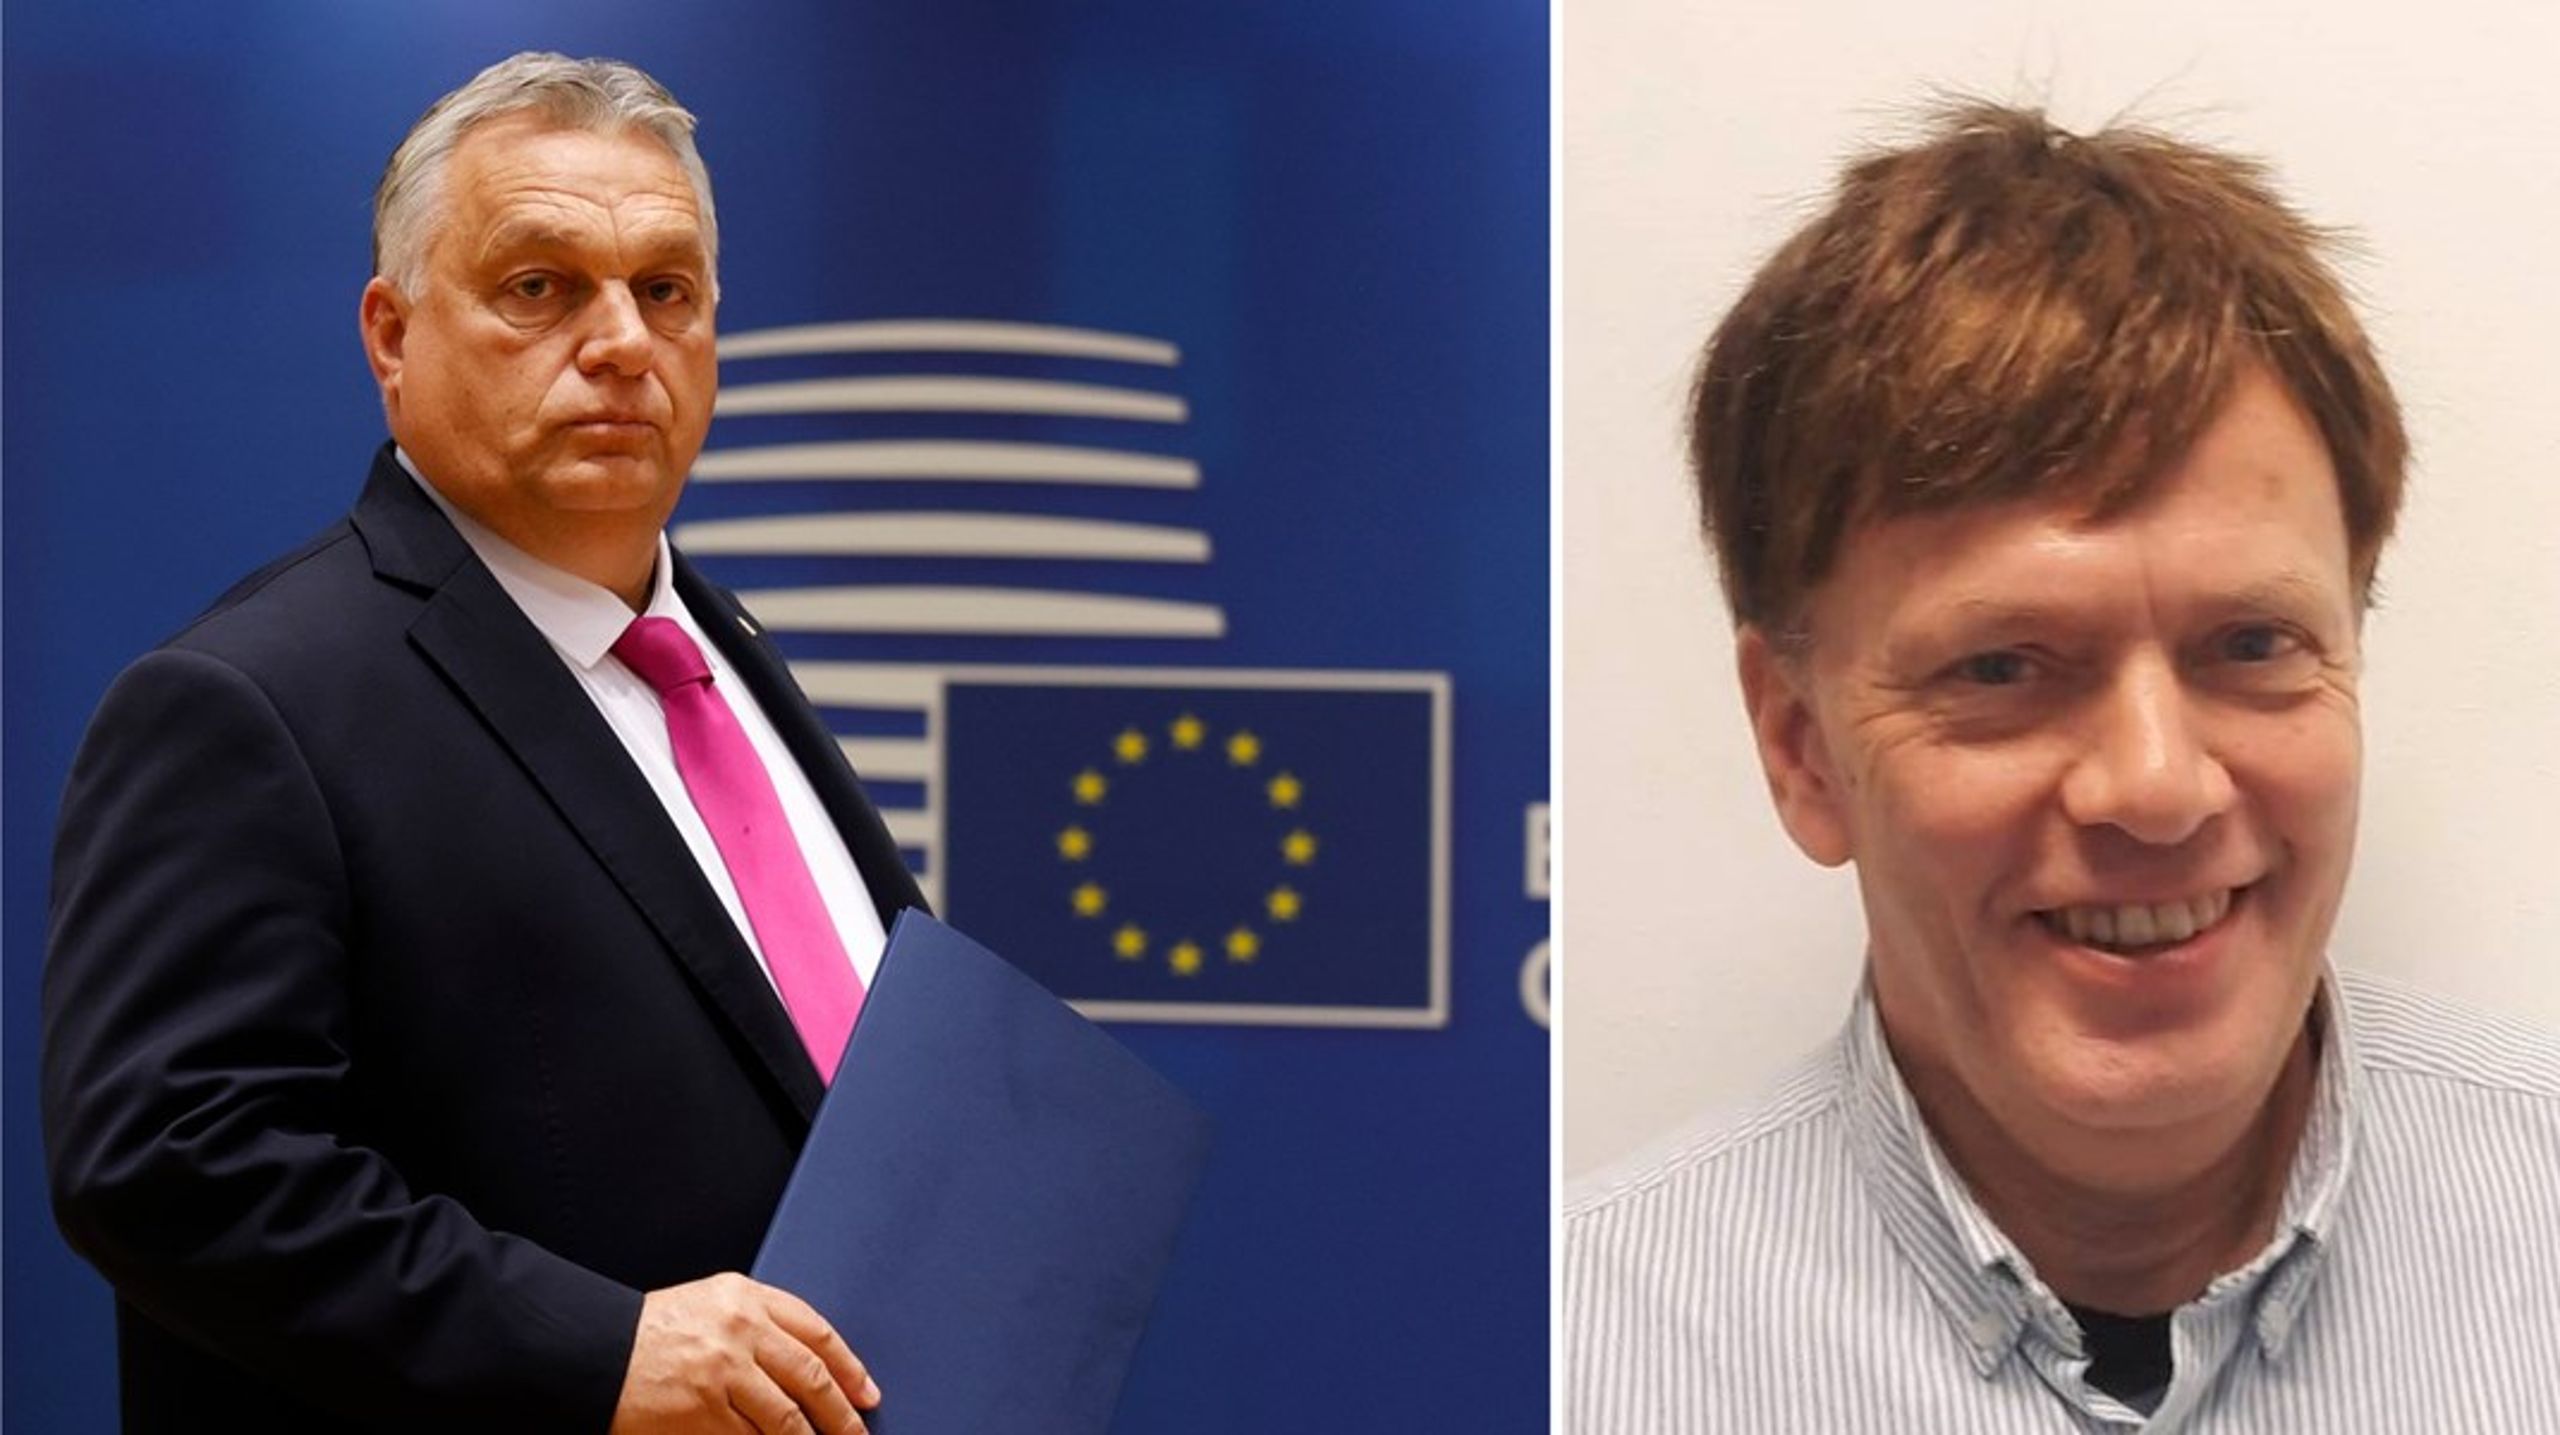 Viktor Orban har siden valgseieren i 2010 basert mye av sin politiske makt på en systematisk oppbygging av en autoritær politisk allianse på høyresiden i landet, skriver tidligere rådgiver i Europabevegelsen, Per Thorsdalen.